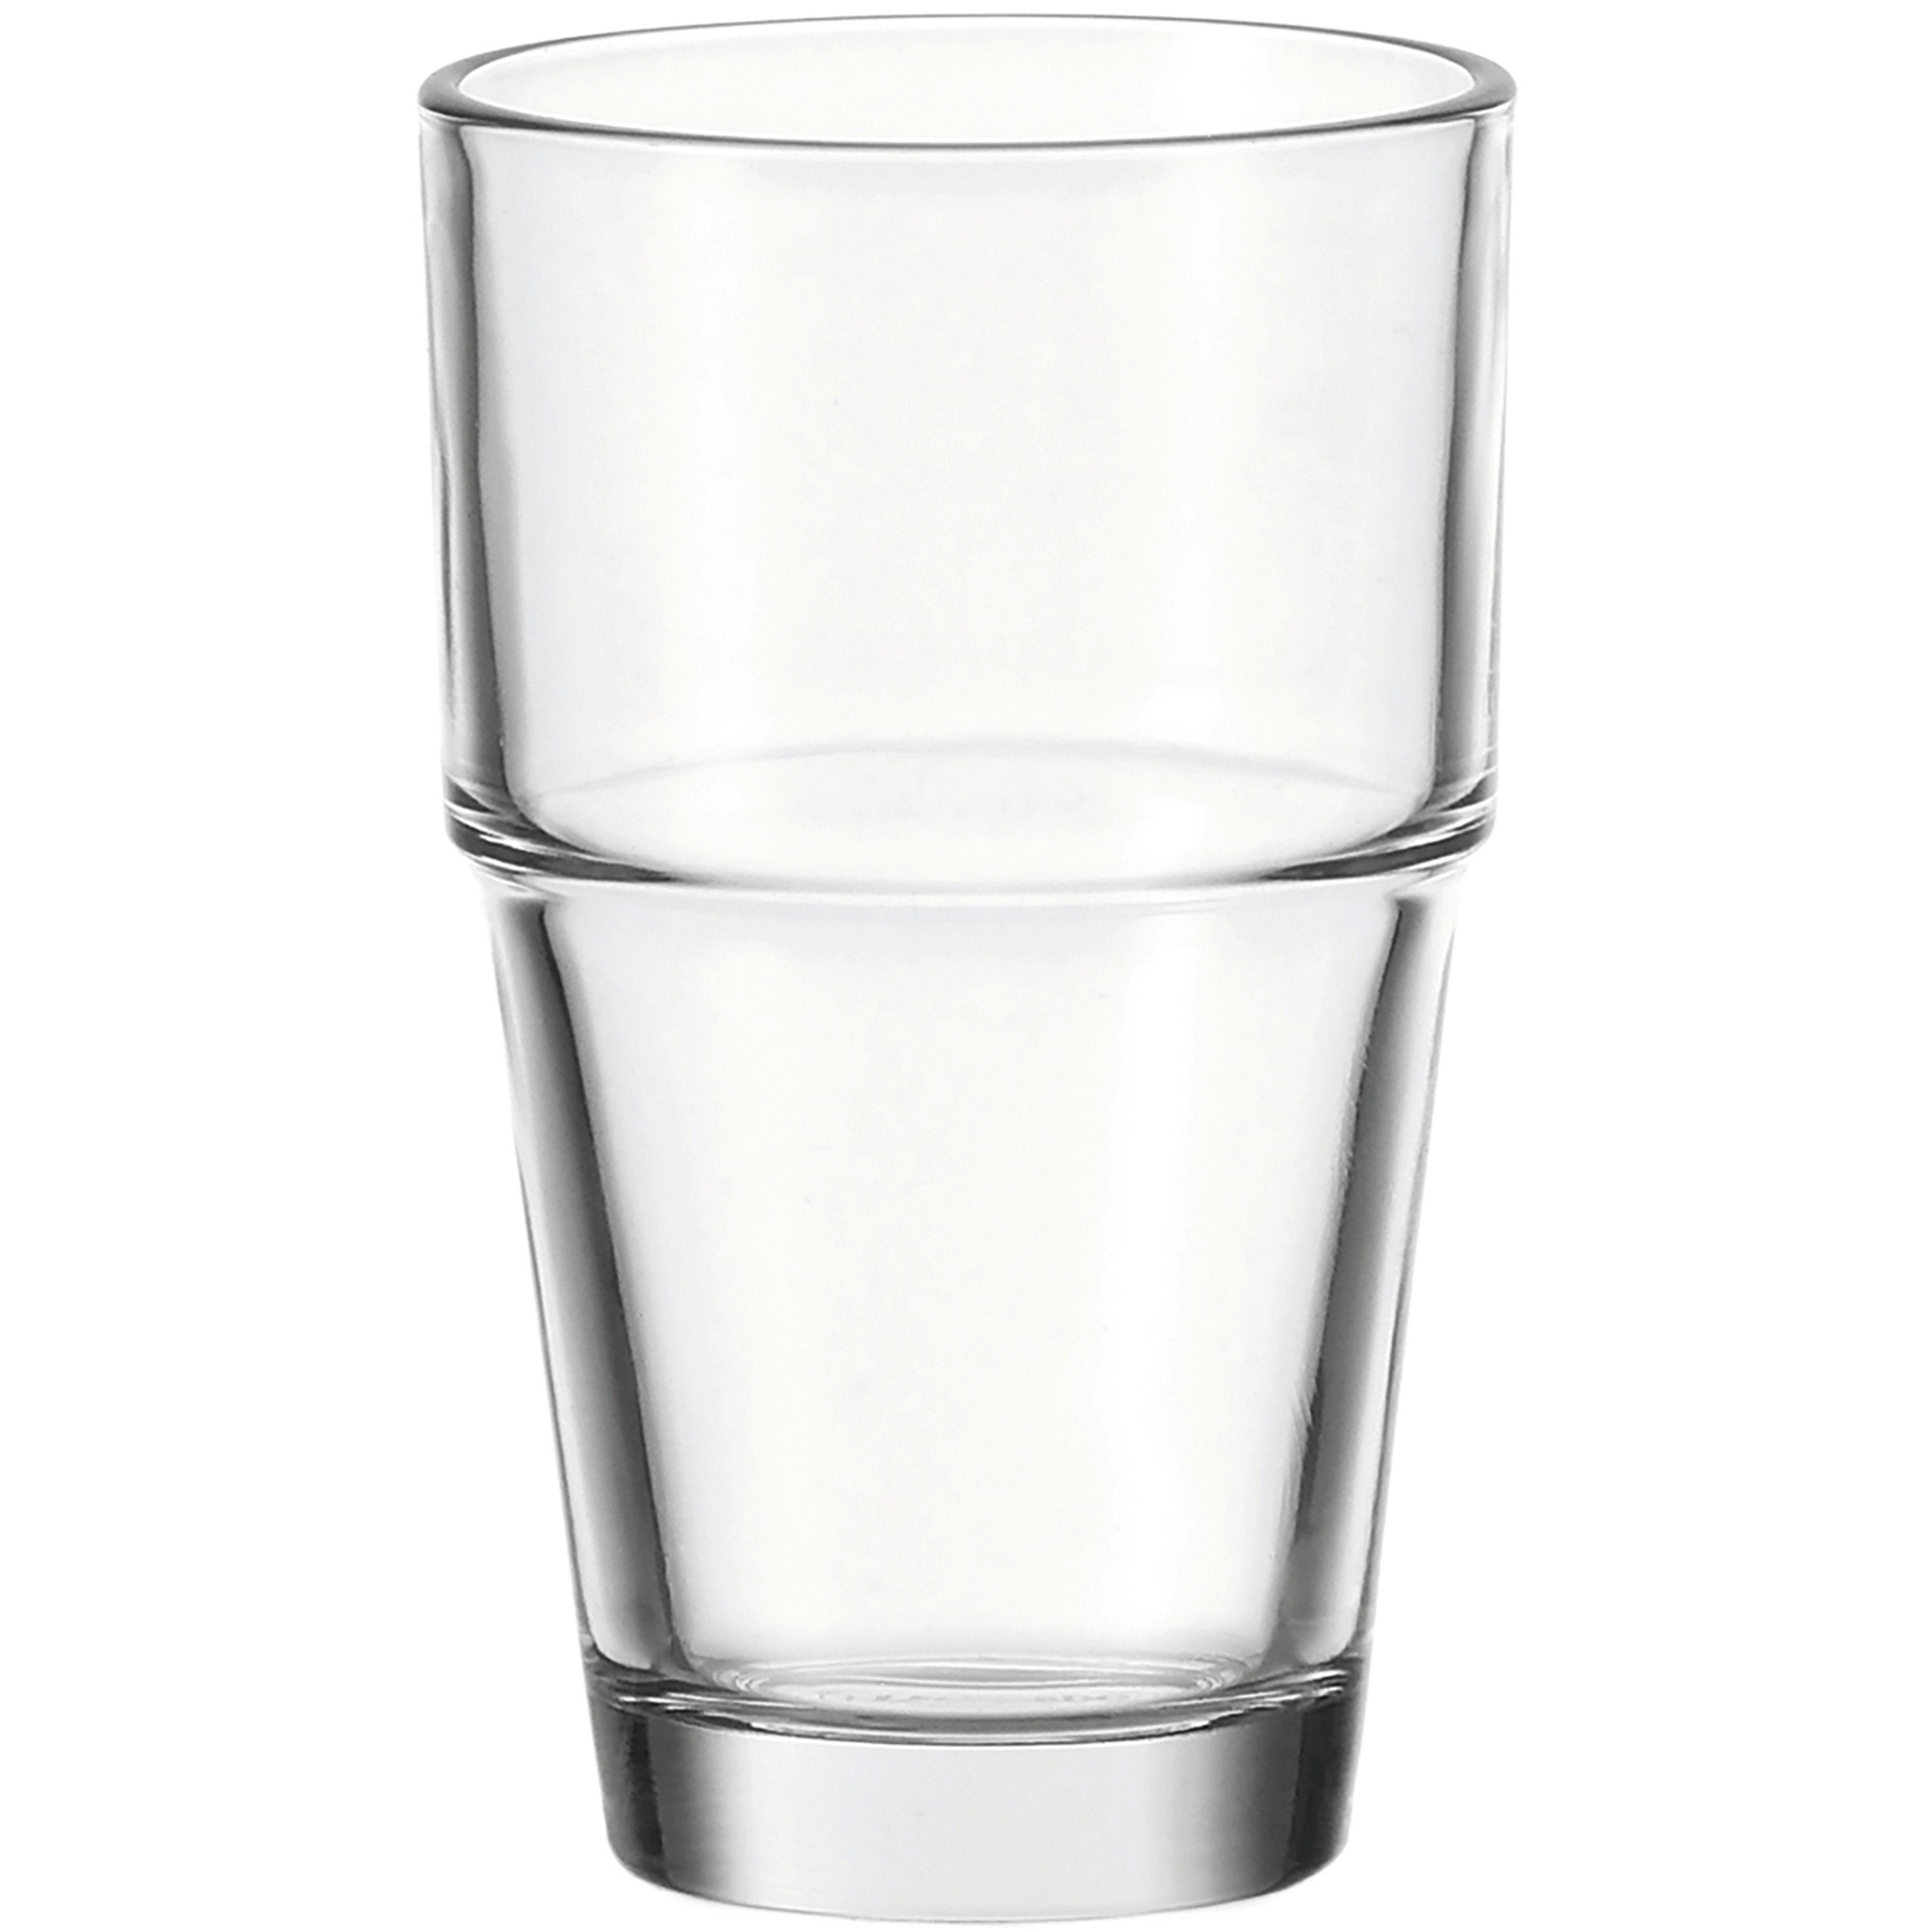 LEONARDO Glas LEONARDO Stapel Glas aus der Serie SOLO, Füllmenge 410 ml., klarglas, Glas